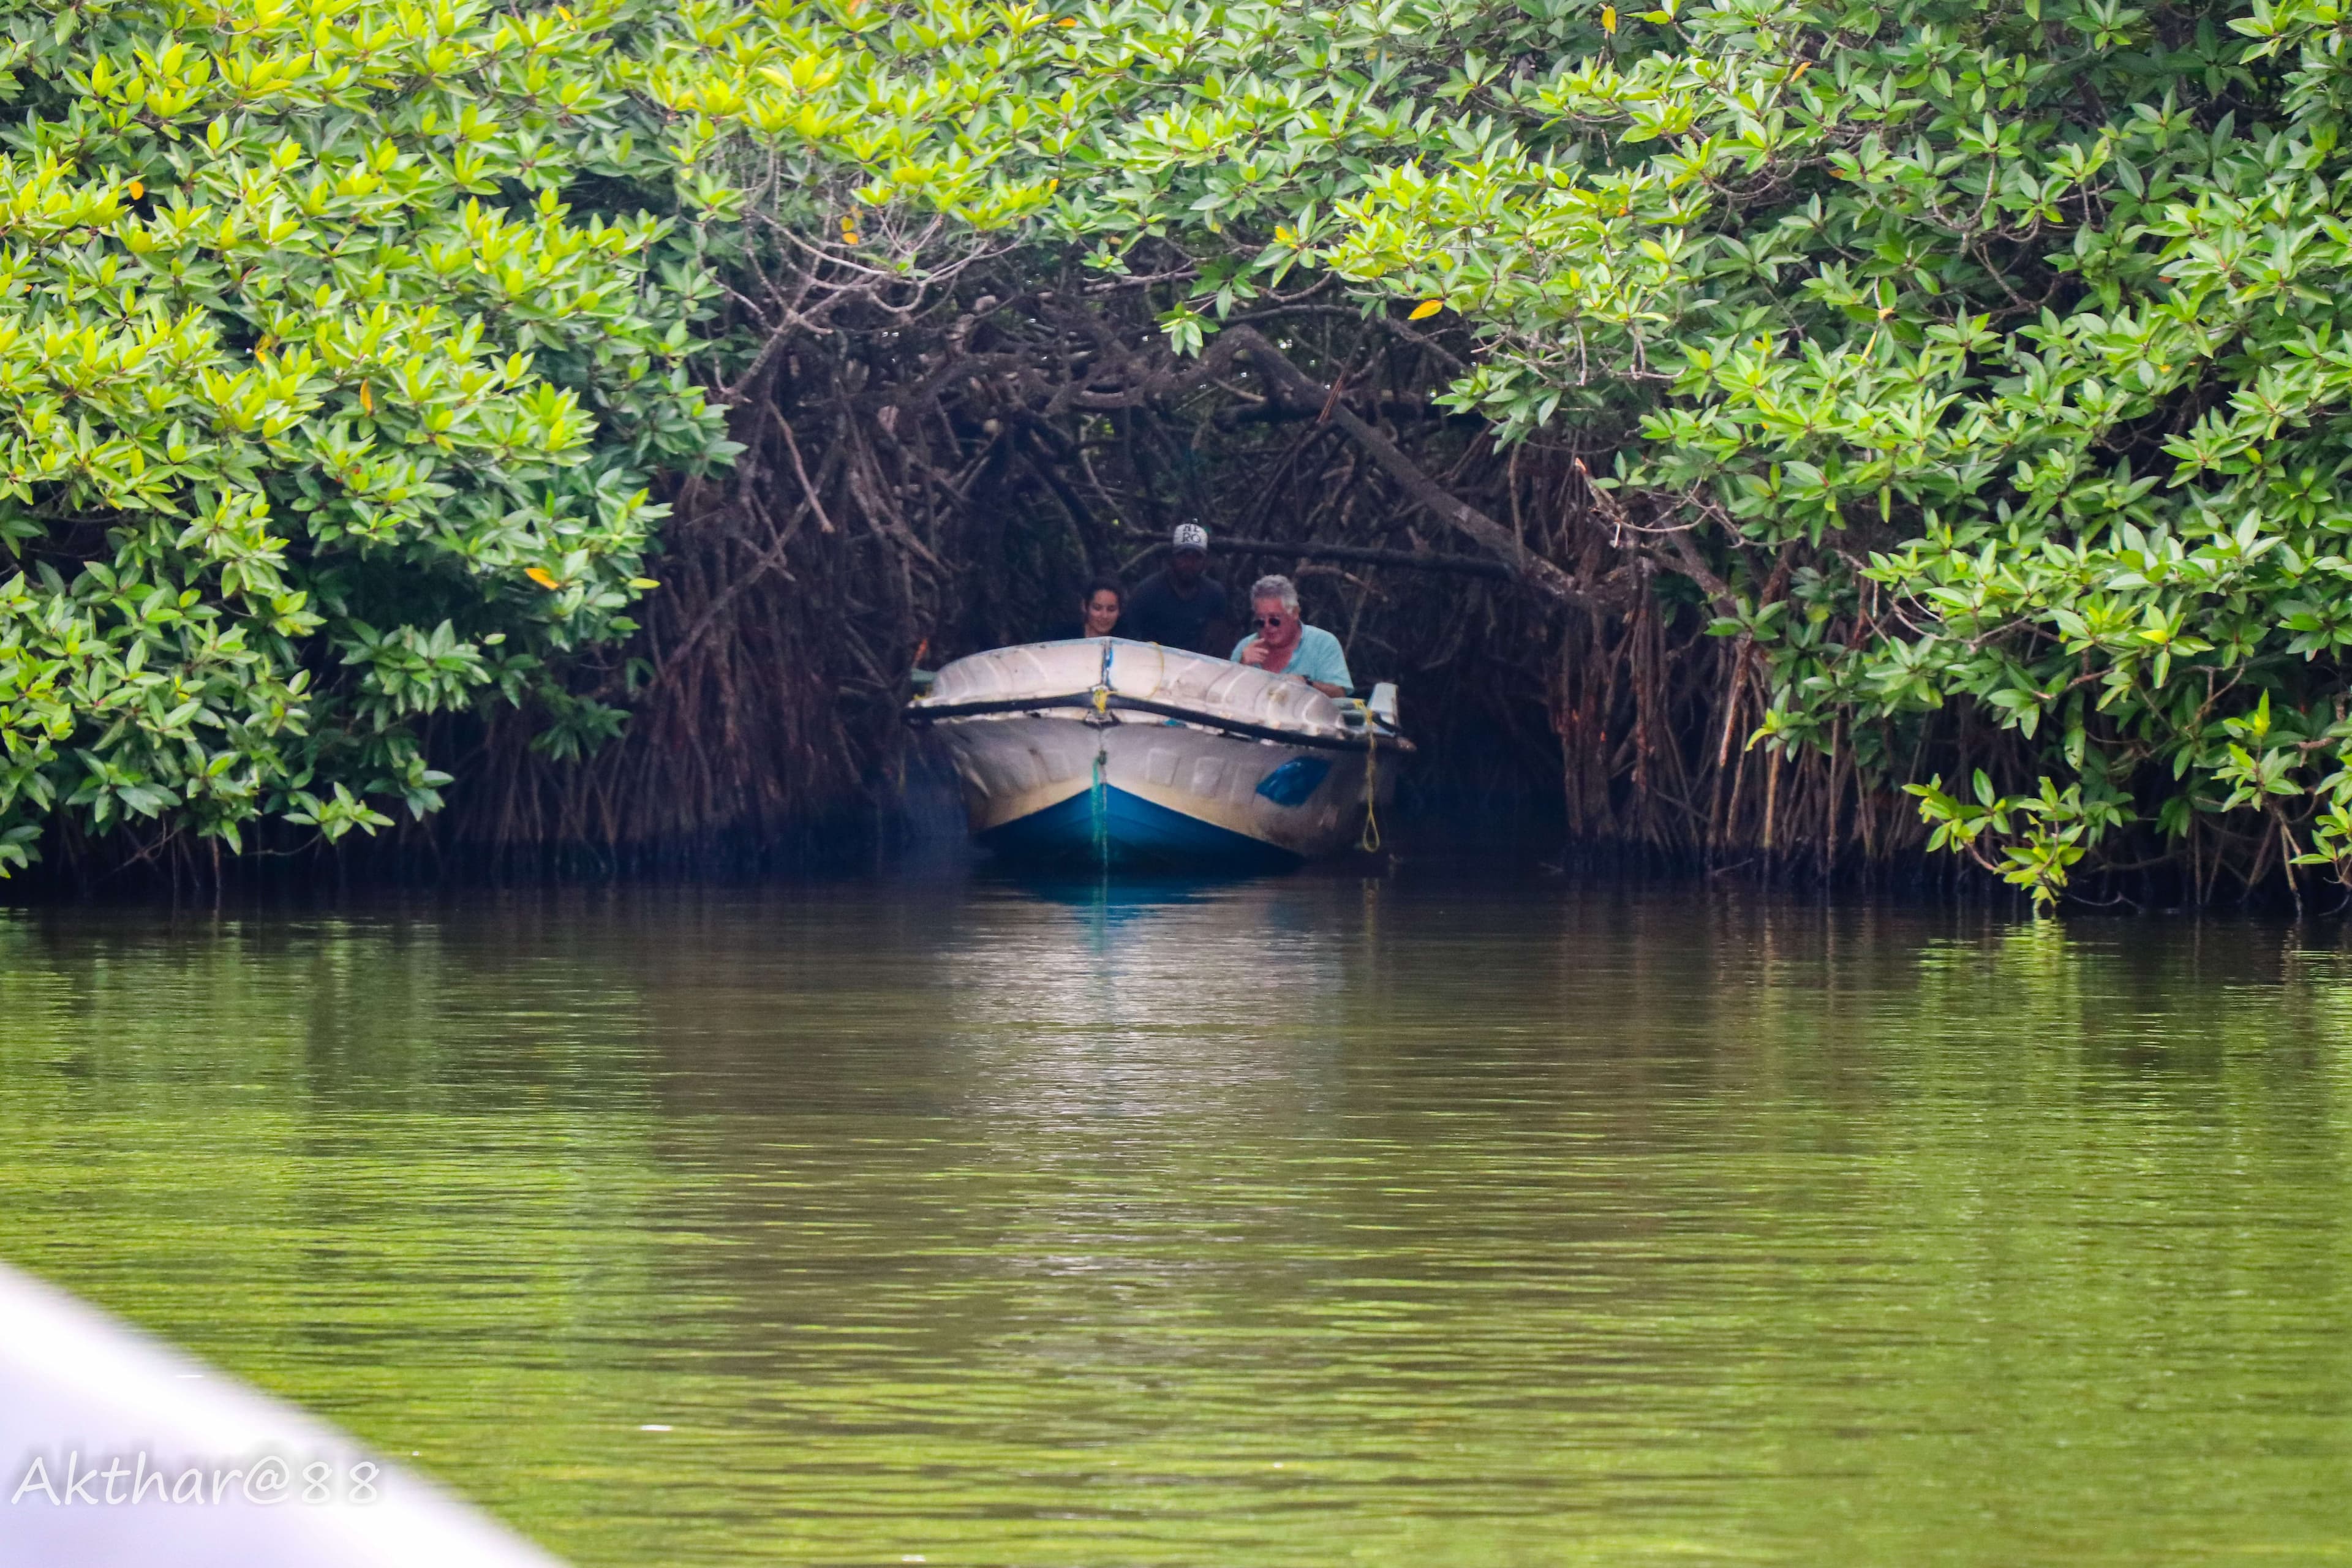 有游人的小船穿过红树林 (Kadolana) 森林本托塔斯里兰卡